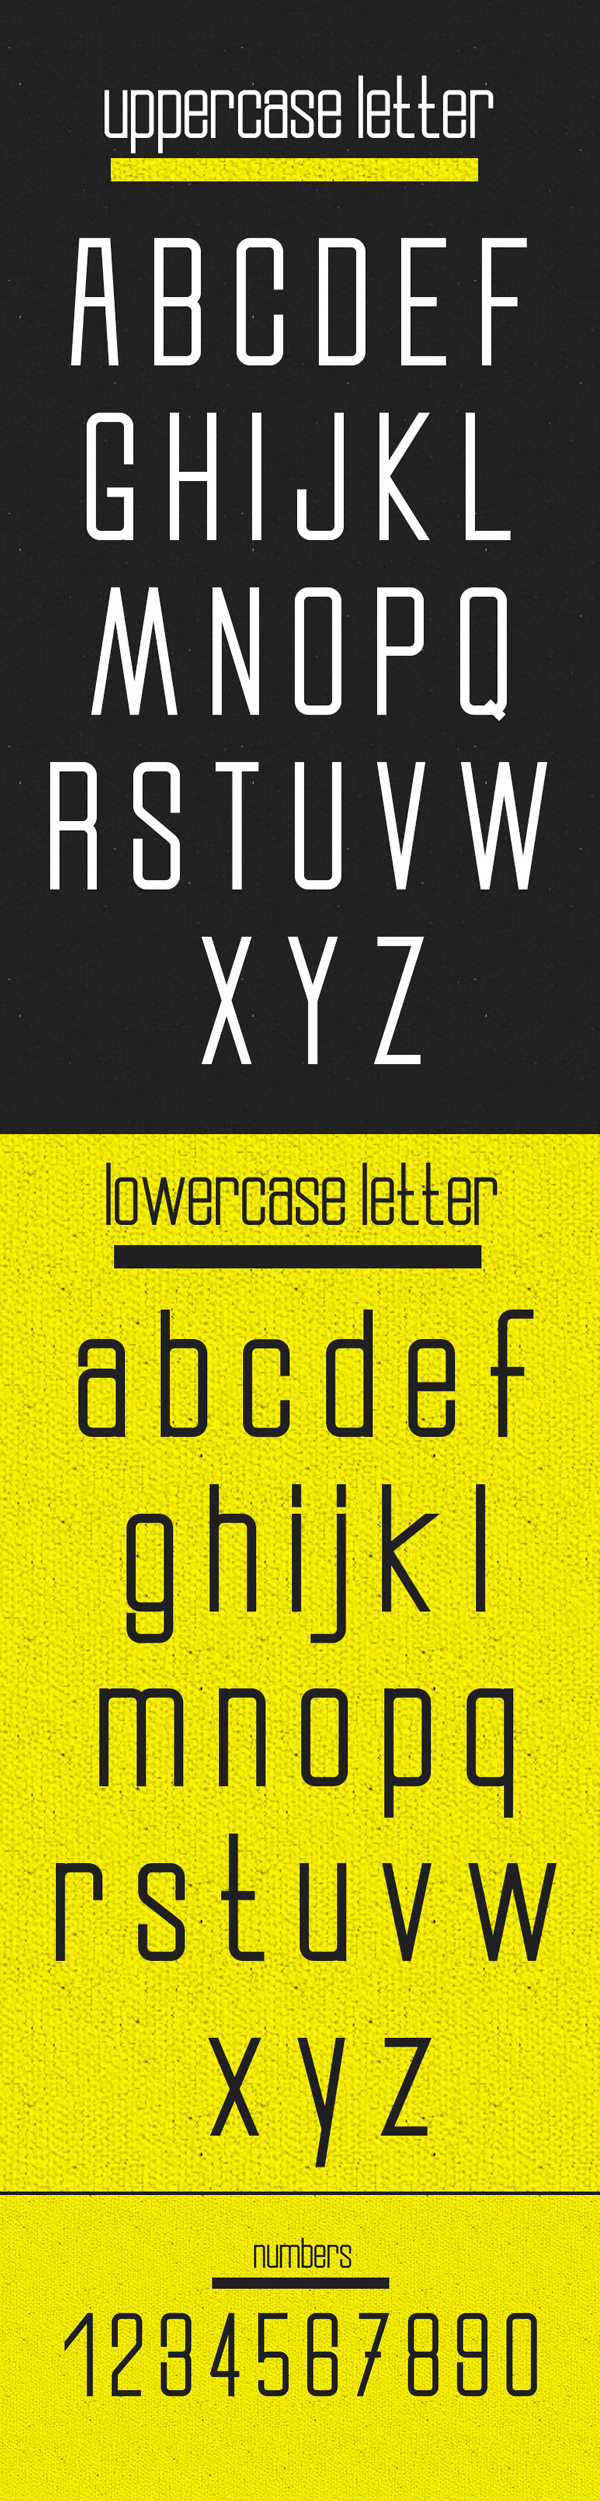 Slender Free Font Letters